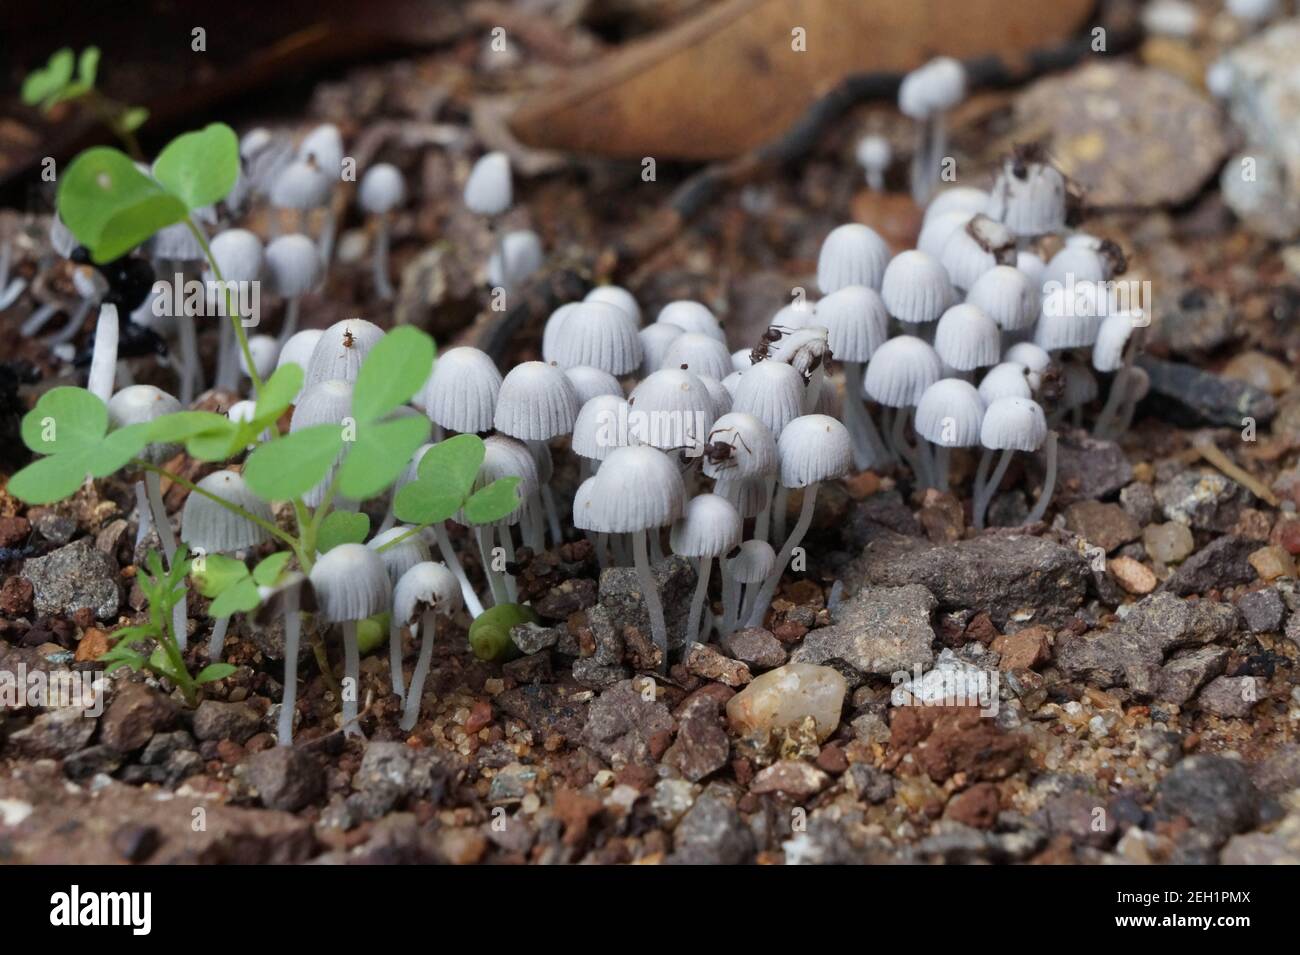 Mushroom picking Stock Photo